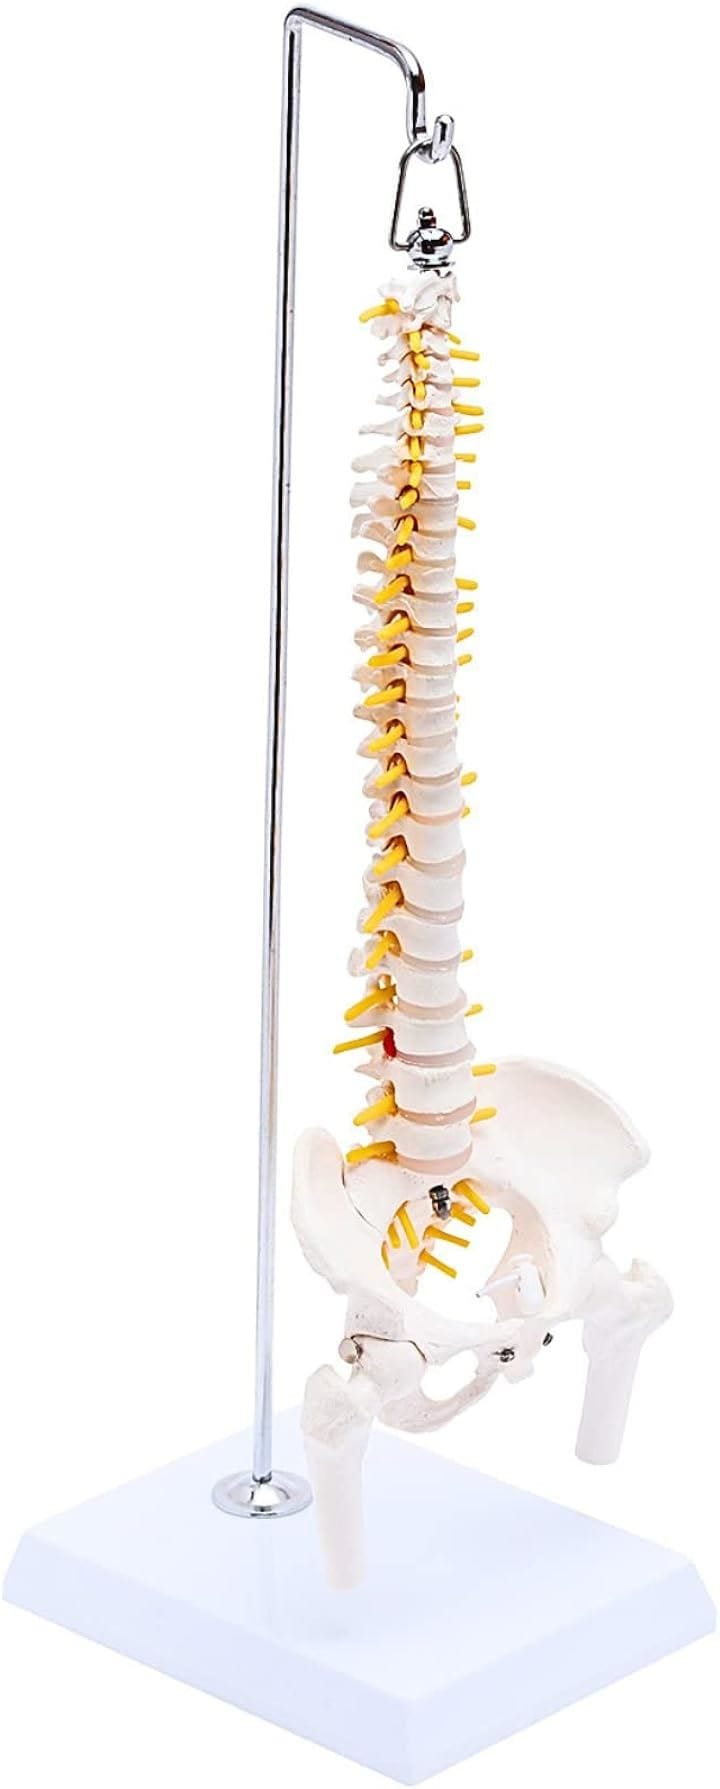 1/2サイズ 高精度 グニャと背骨を動かせる ミニ脊柱模型 約45cm 人体模型 骨模型 骨格標本 骨盤 台座付き